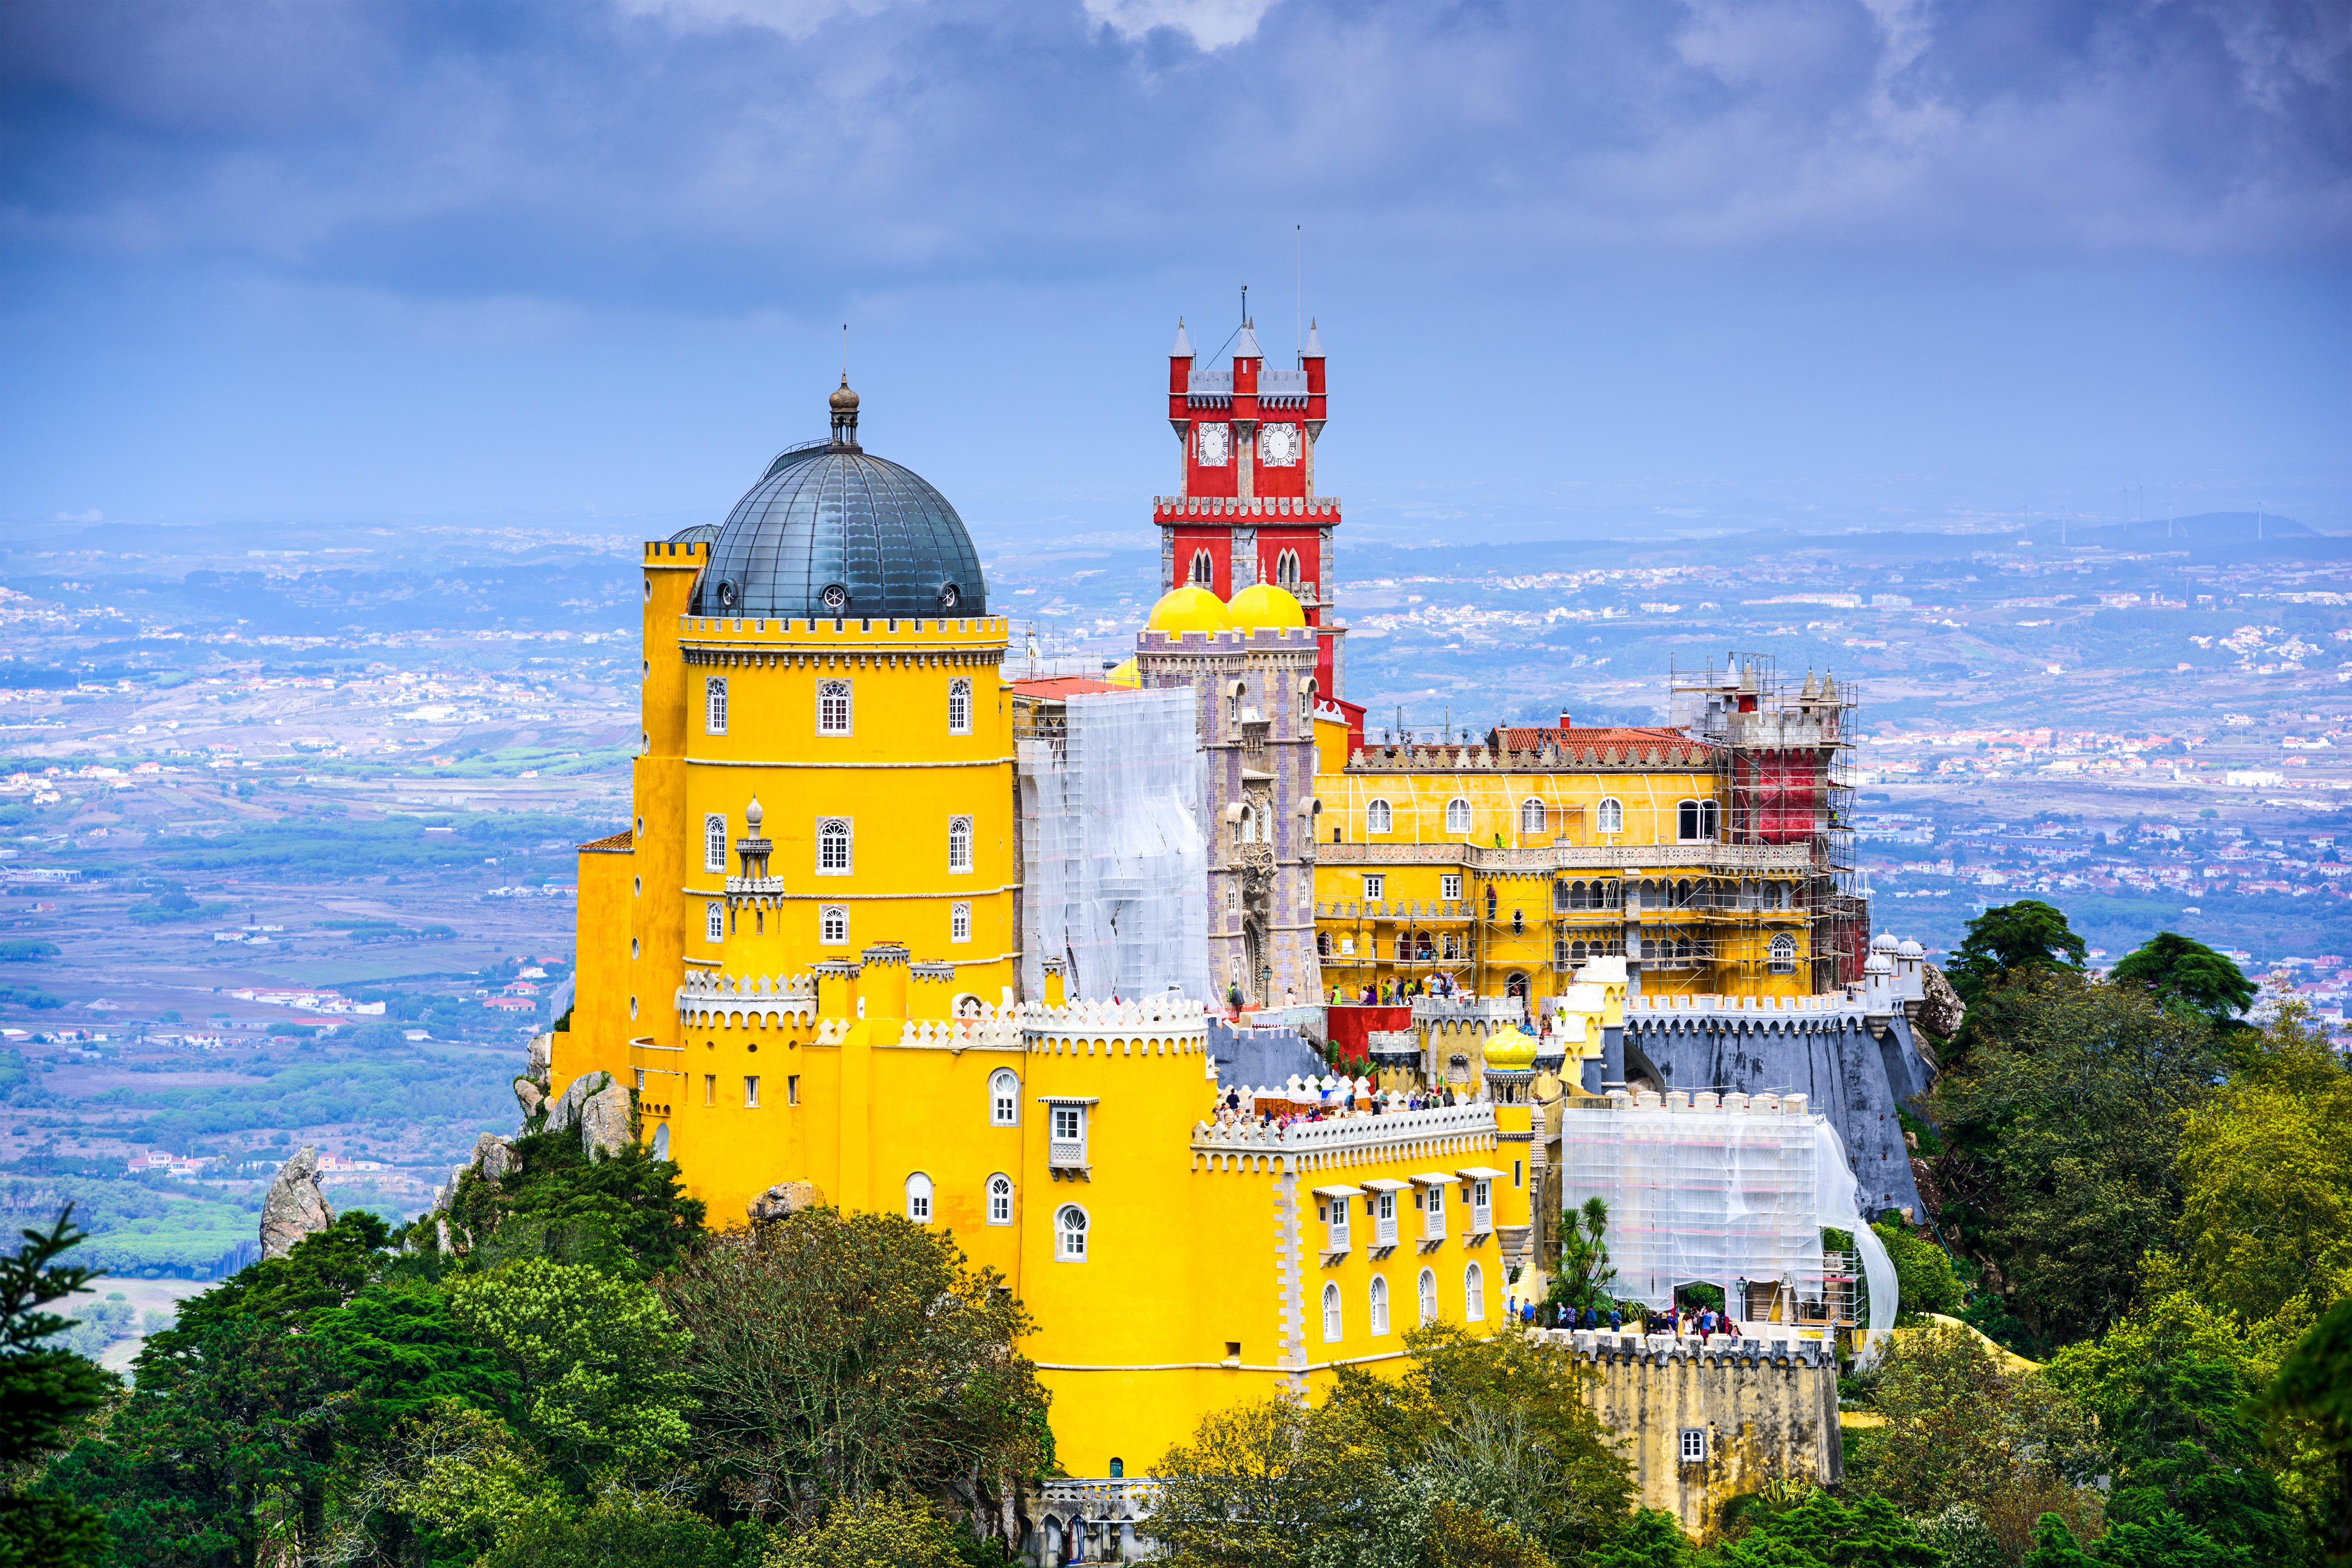 Sintra gehört zum Unesco-Weltkulturerbe und liegt nur wenige Kilometer von Lissabon entfernt